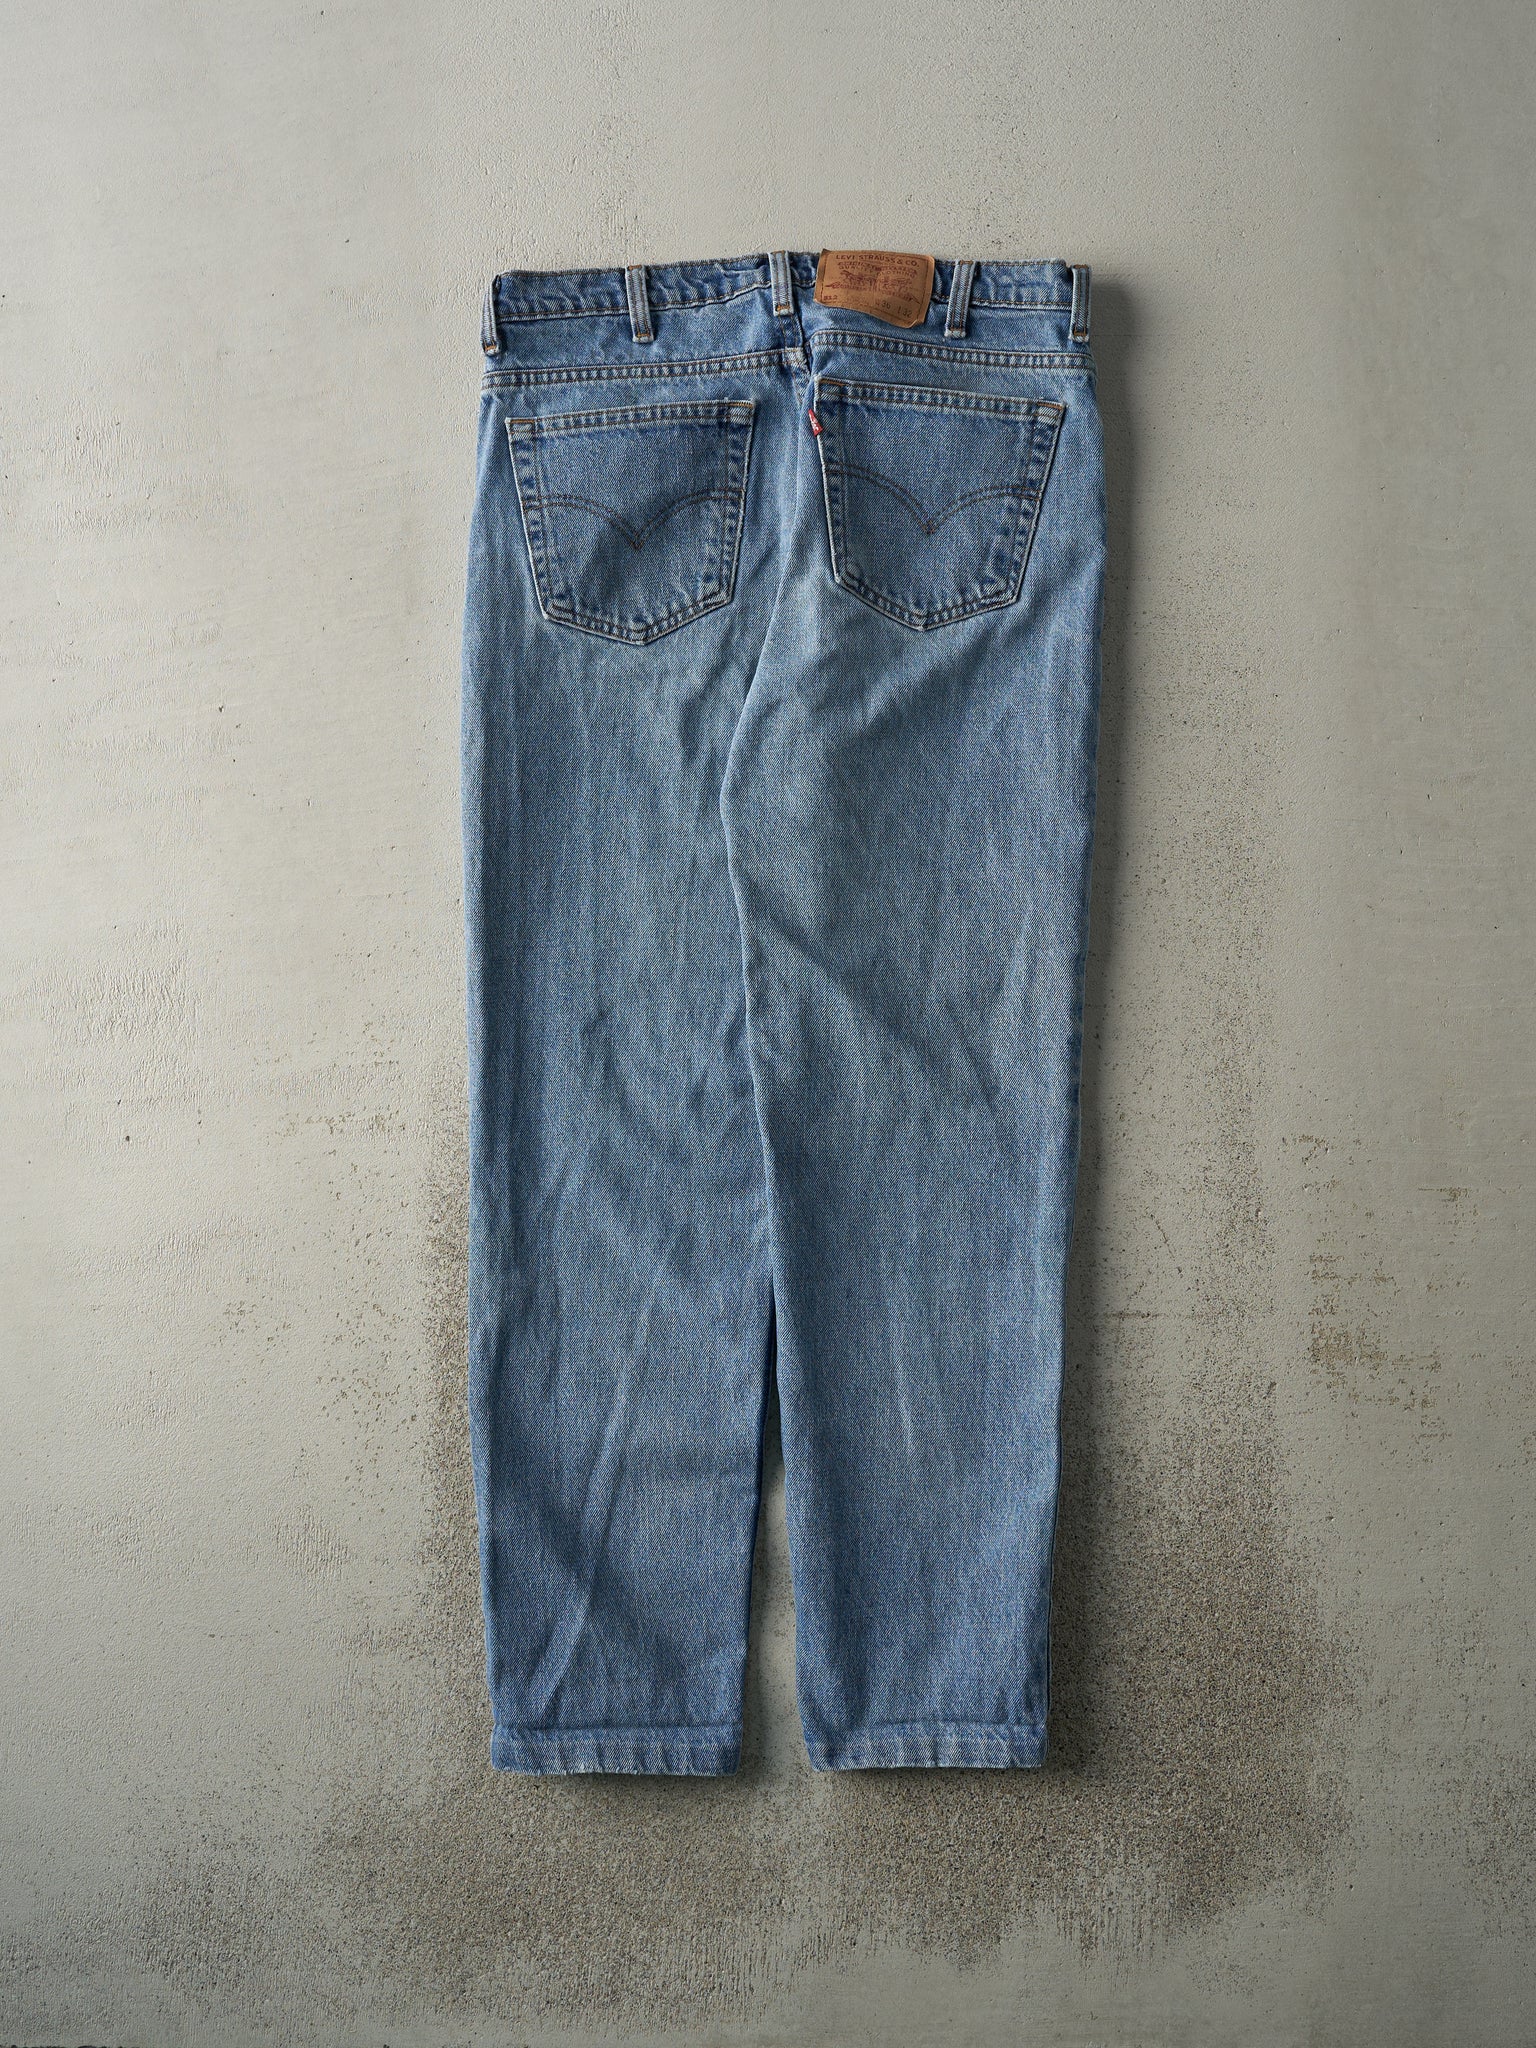 Vintage 90s Light Wash Levi's 512 Jeans (34x30)